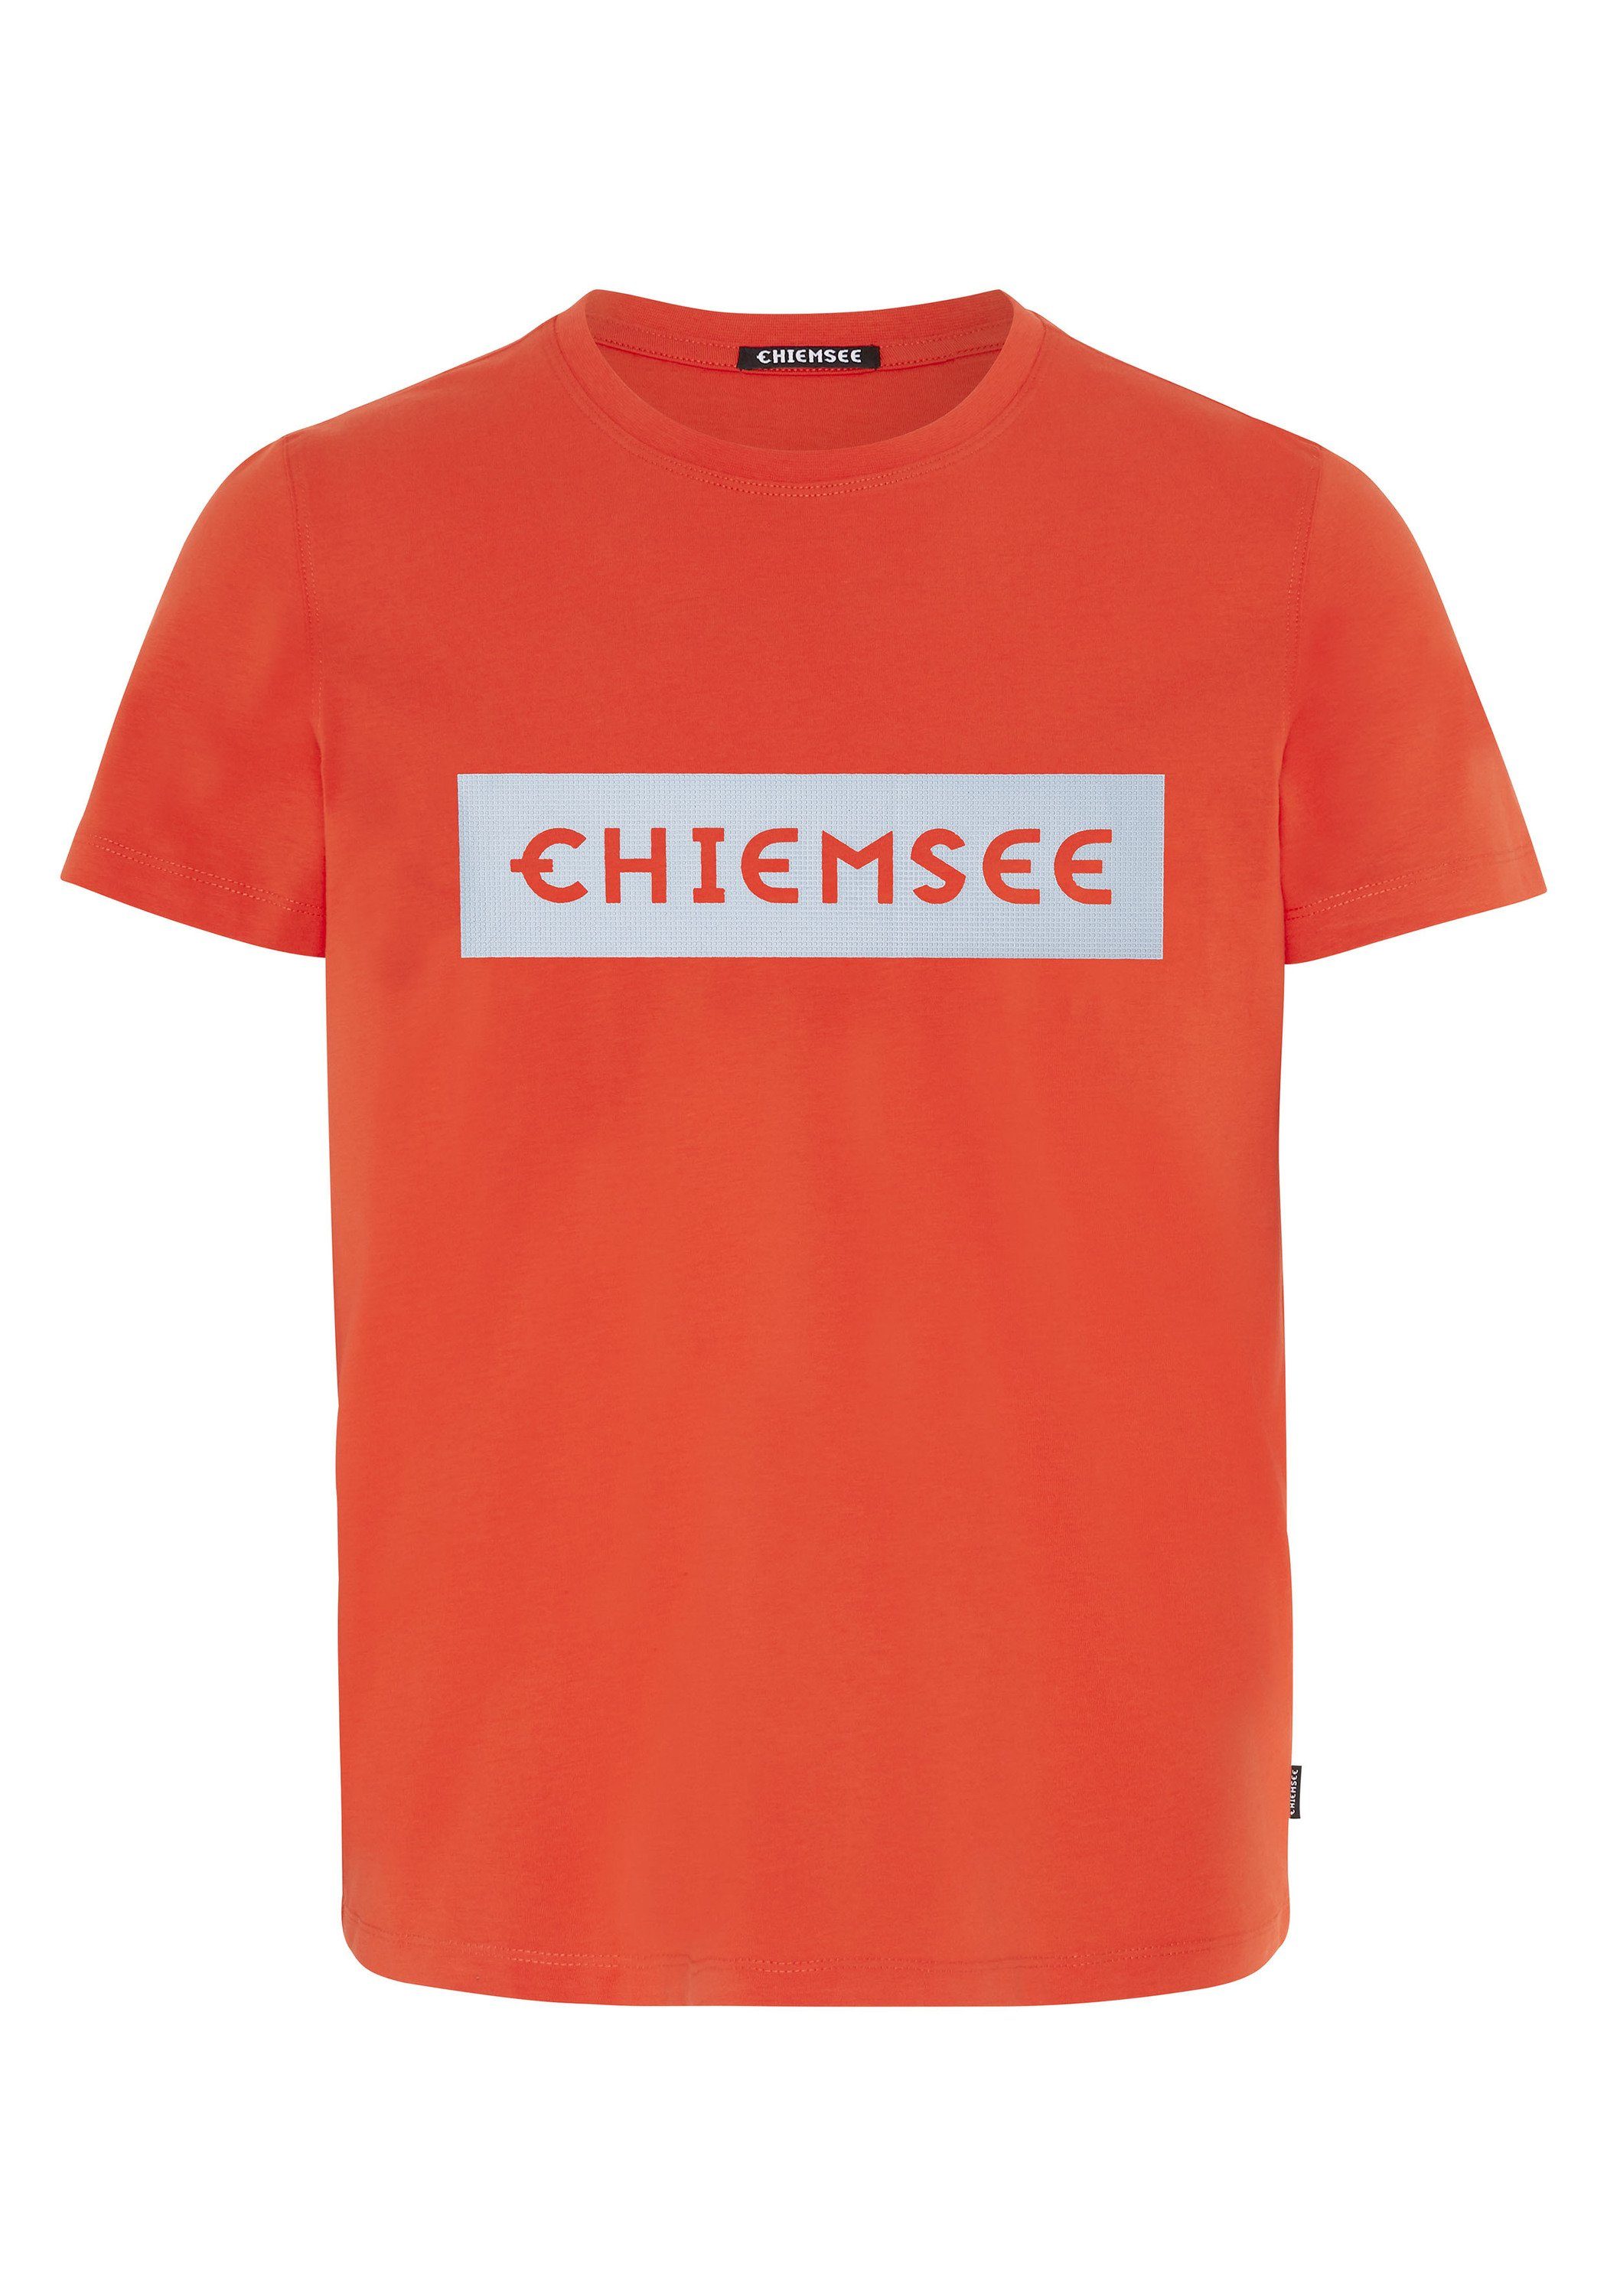 Print-Shirt T-Shirt Chiemsee mit Markenschriftzug 1 plakativem